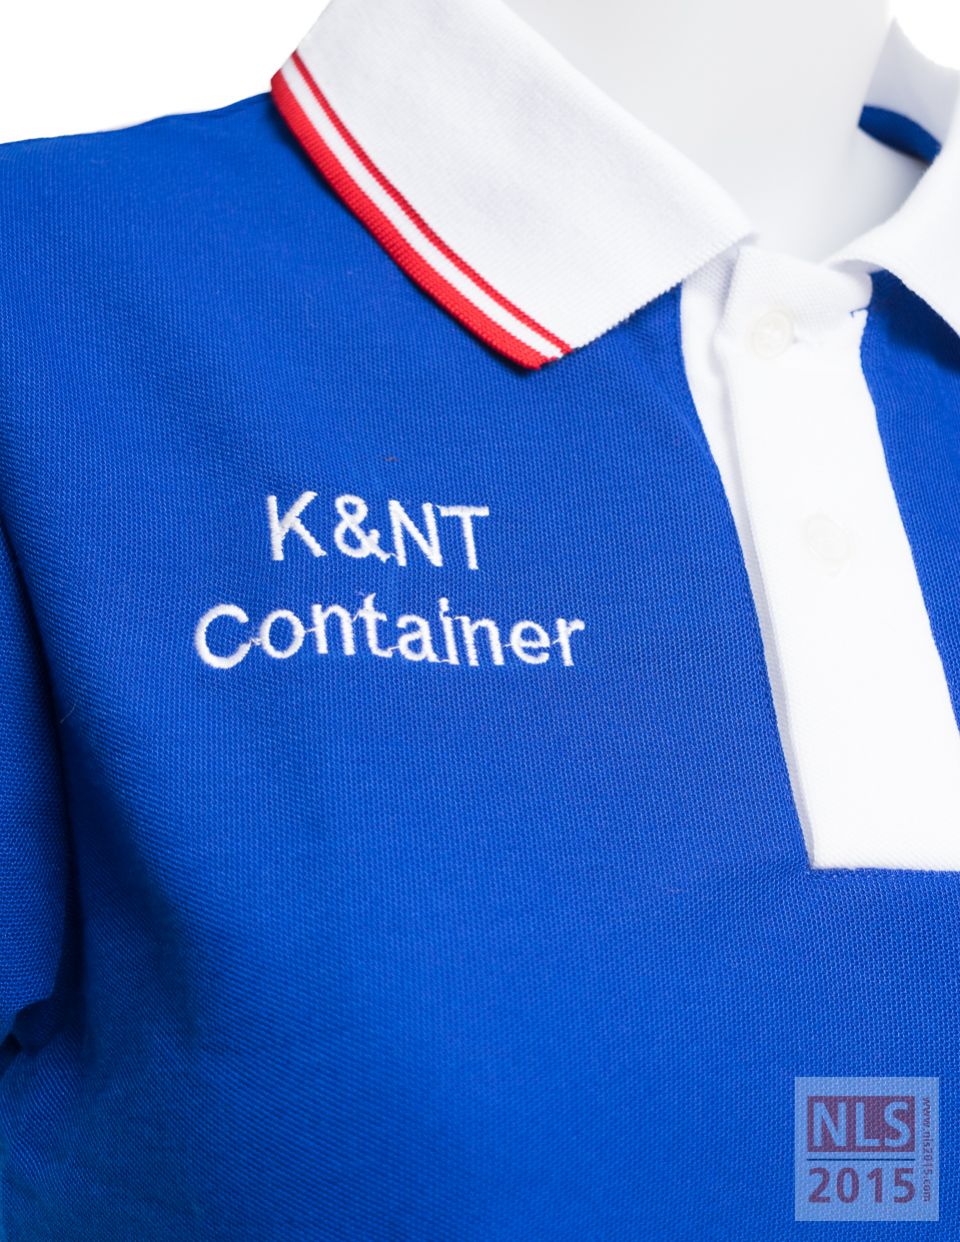 แบบเสื้อโปโลผู้หญิง K&NT Container / นลินสิริแหลมฉบังรับตัดเสื้อโปโลพร้อมปักโลโก้รูปที่ 